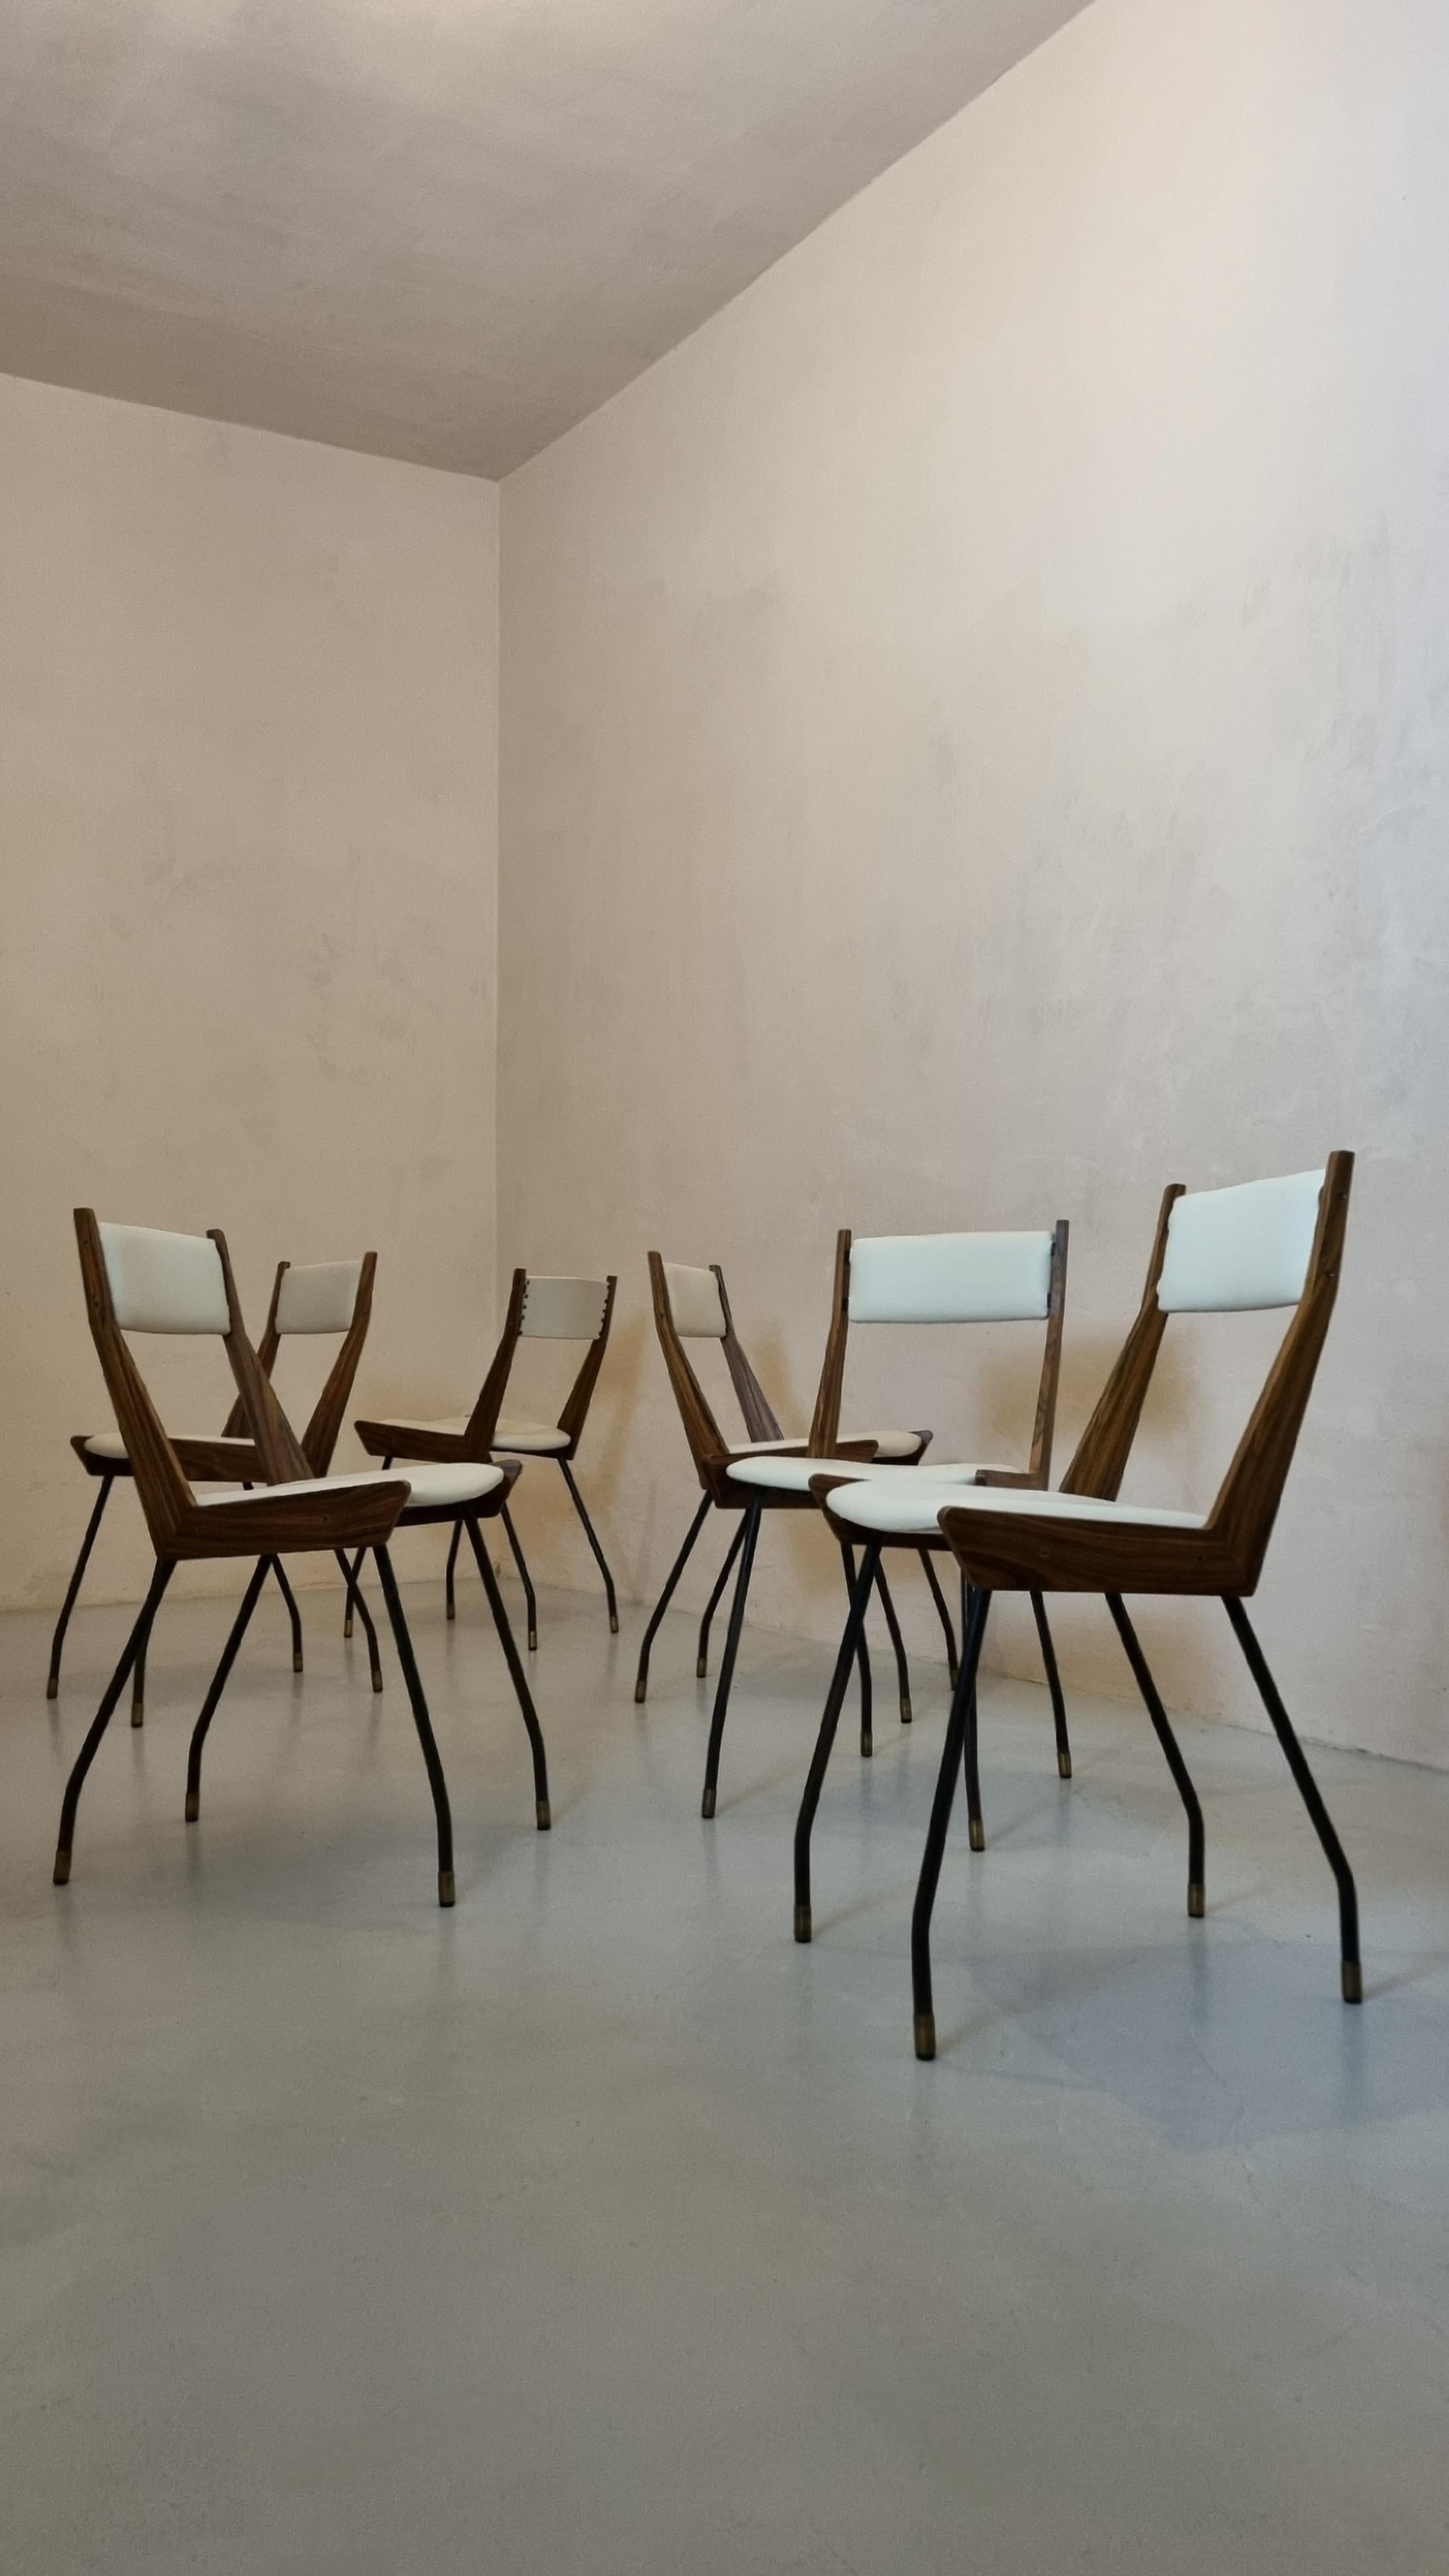 Ensemble de 6 chaises conçues par Carlo Ratti dans les années 1950 pour Industria Legni Curvati.
Structure en fer, pieds en laiton, bois plaqué, sièges en cuir. 
Les chaises ont été restaurées en respectant les détails d'origine, les sièges ont été